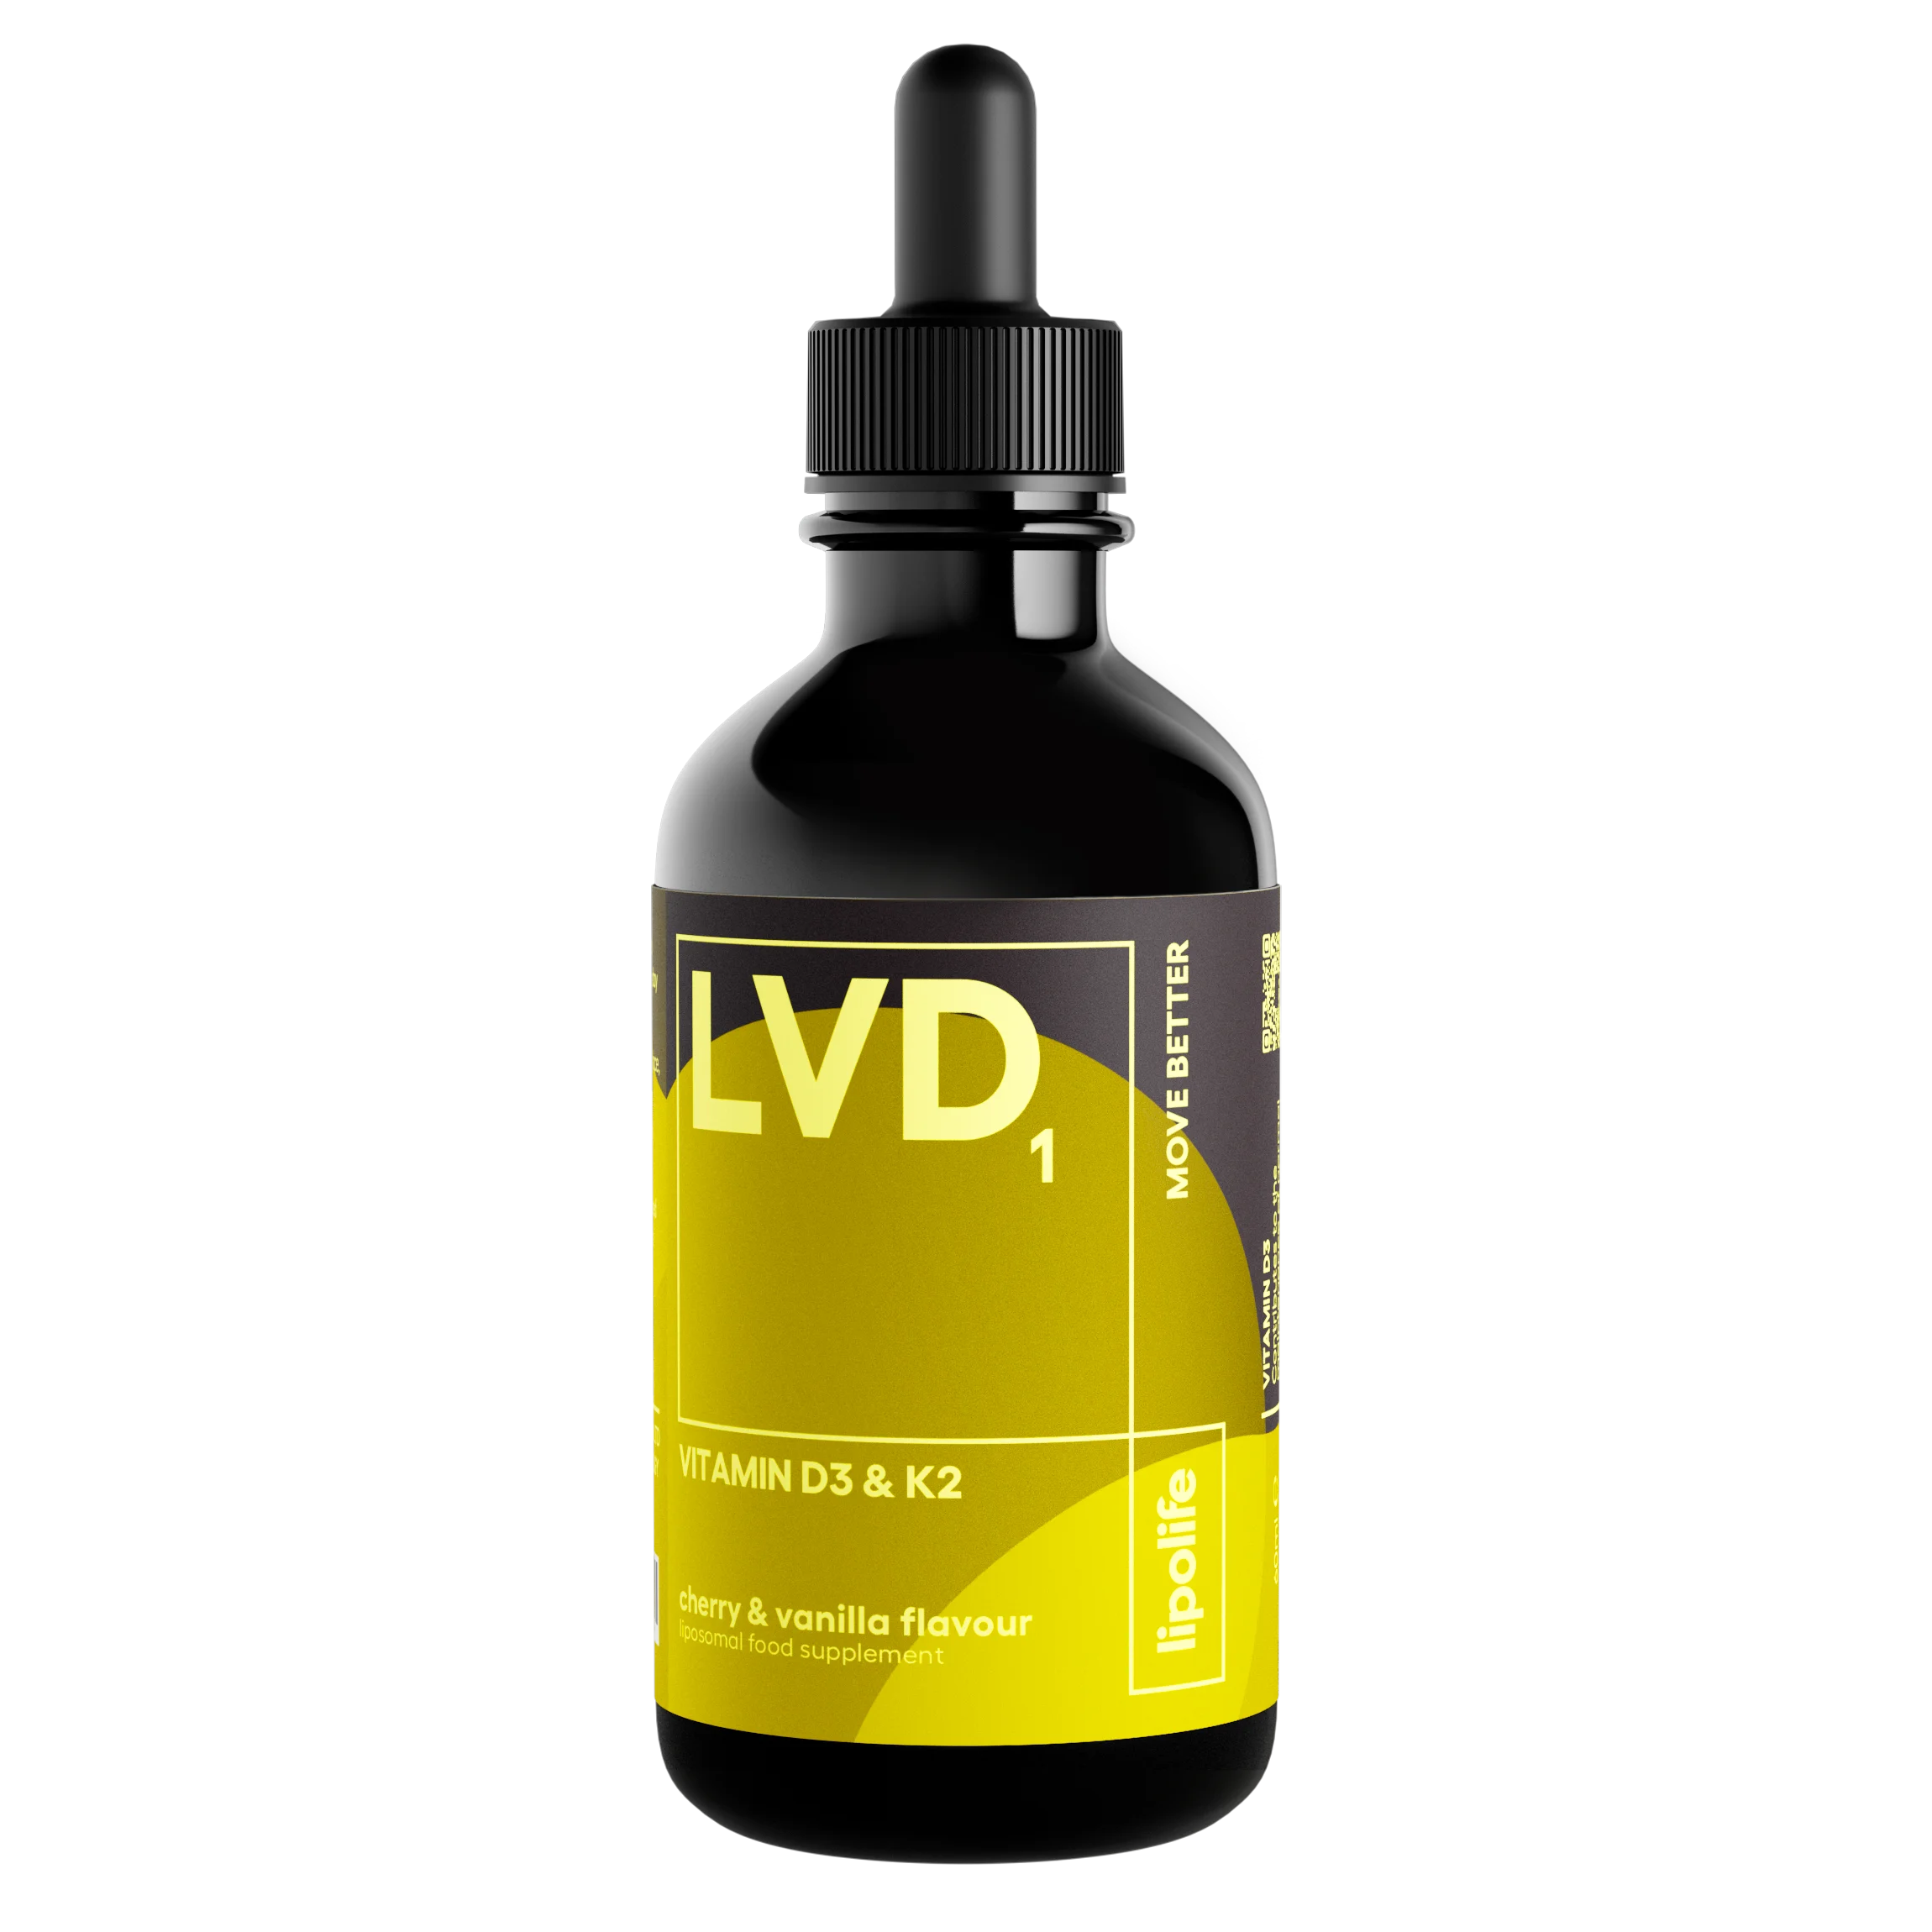 LVD1 - течни и липозомни витамини D3 и K2 - череша и ванилия, 60 мл.